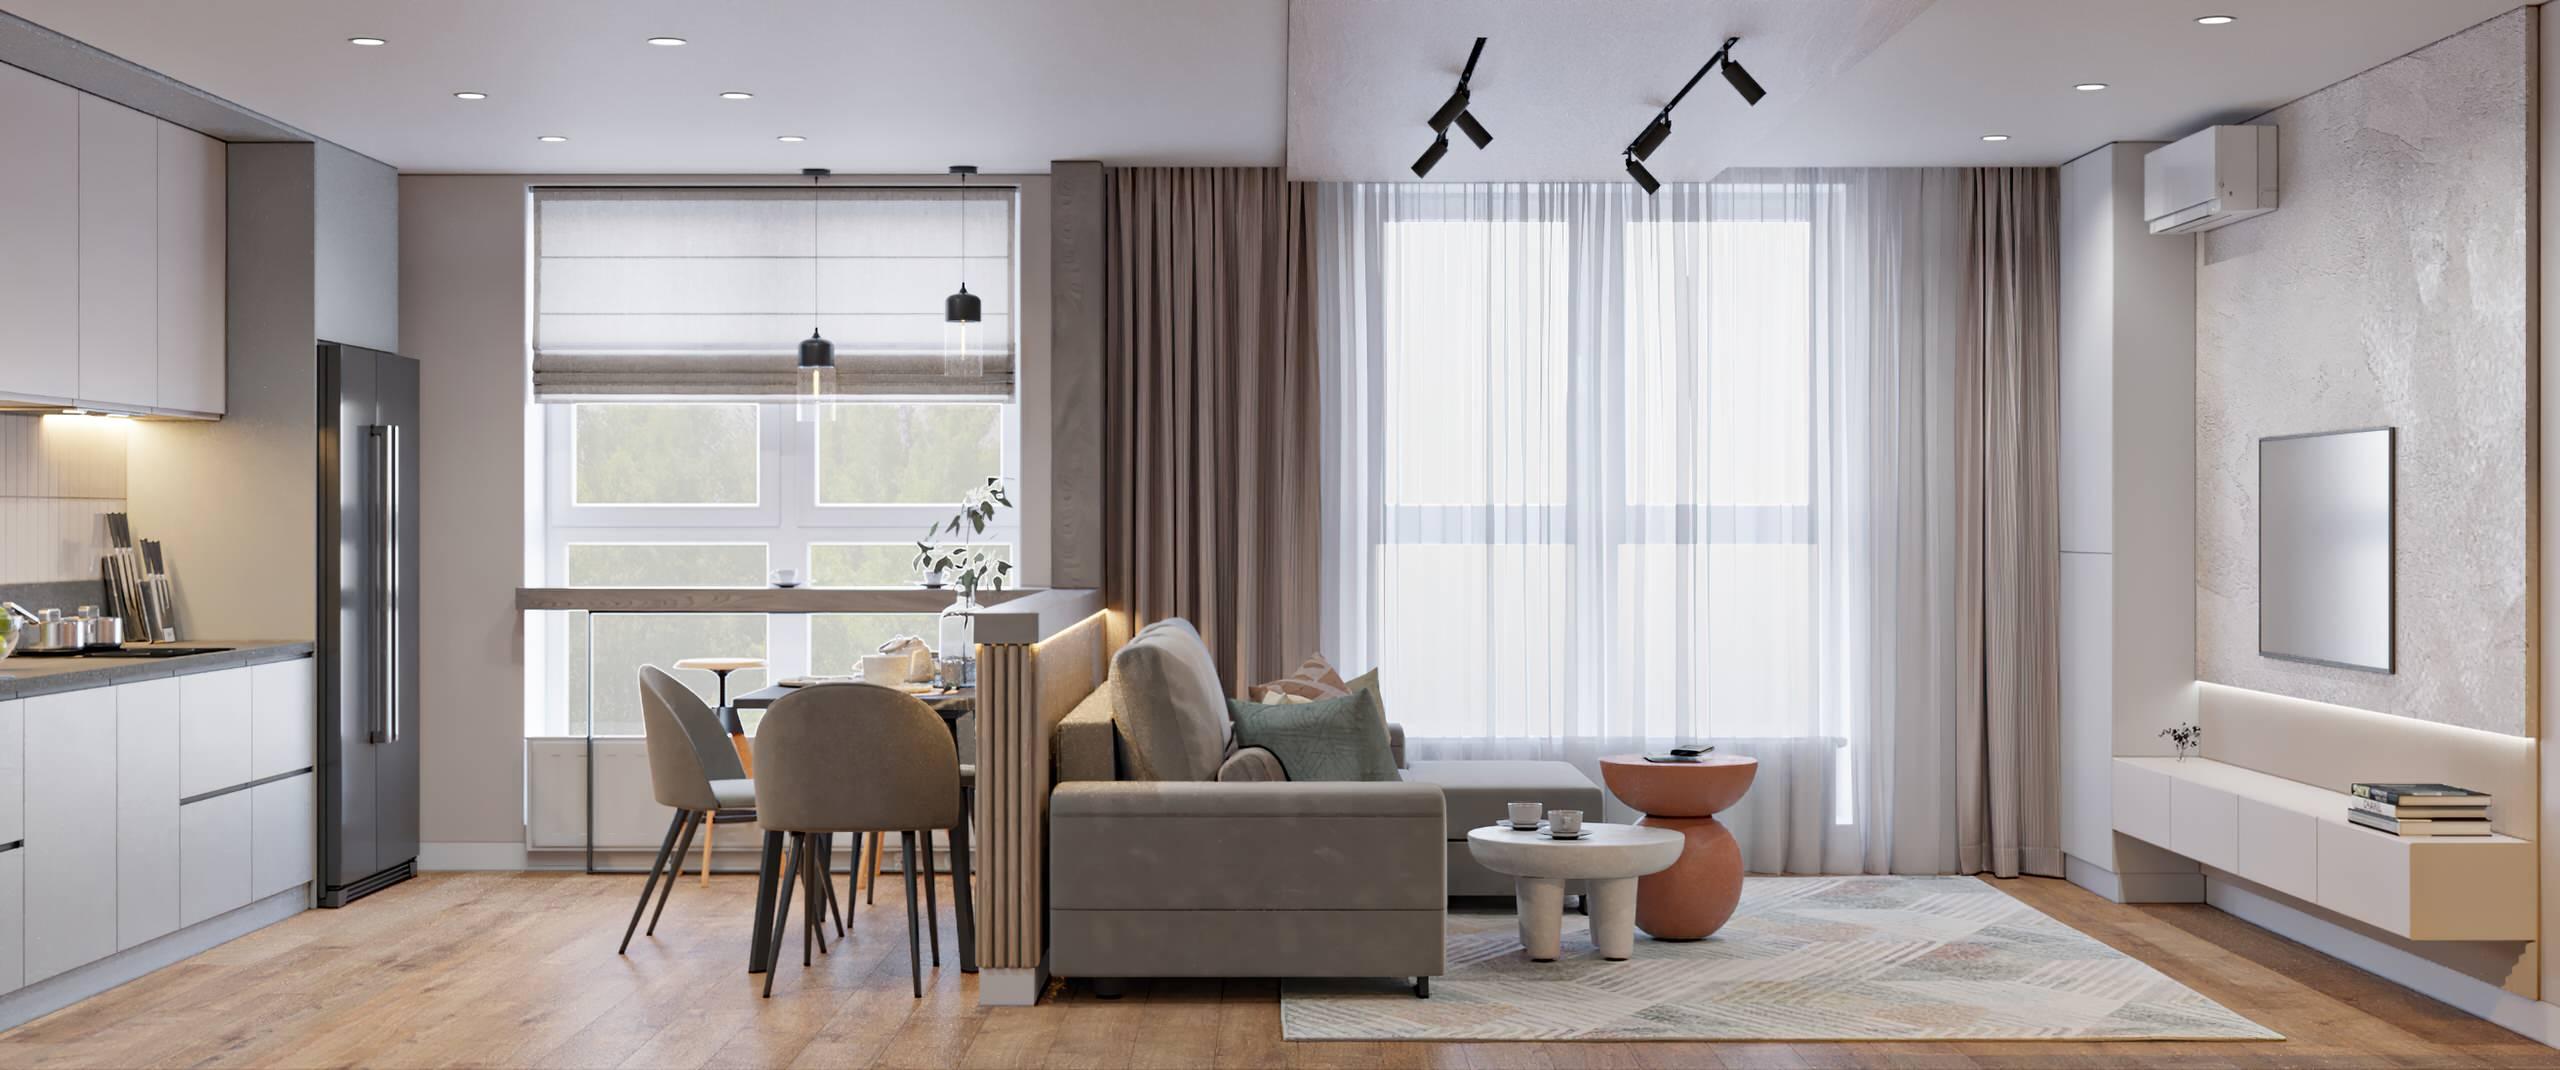 Интерьер гостиной с жалюзи и вертикальными жалюзи в современном стиле